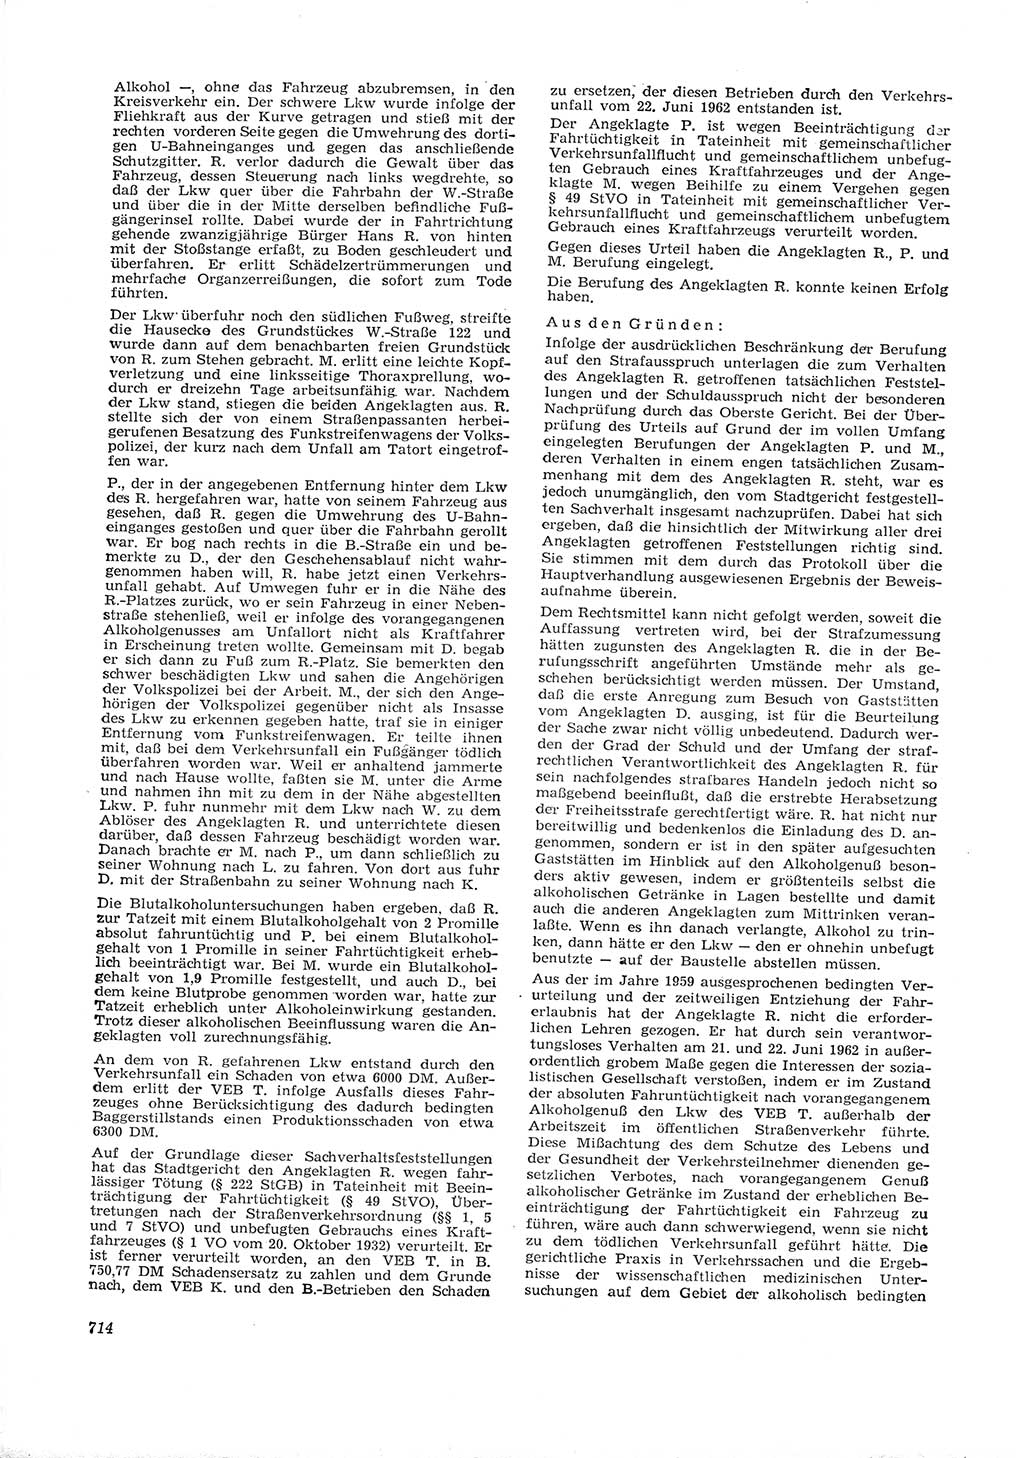 Neue Justiz (NJ), Zeitschrift für Recht und Rechtswissenschaft [Deutsche Demokratische Republik (DDR)], 16. Jahrgang 1962, Seite 714 (NJ DDR 1962, S. 714)